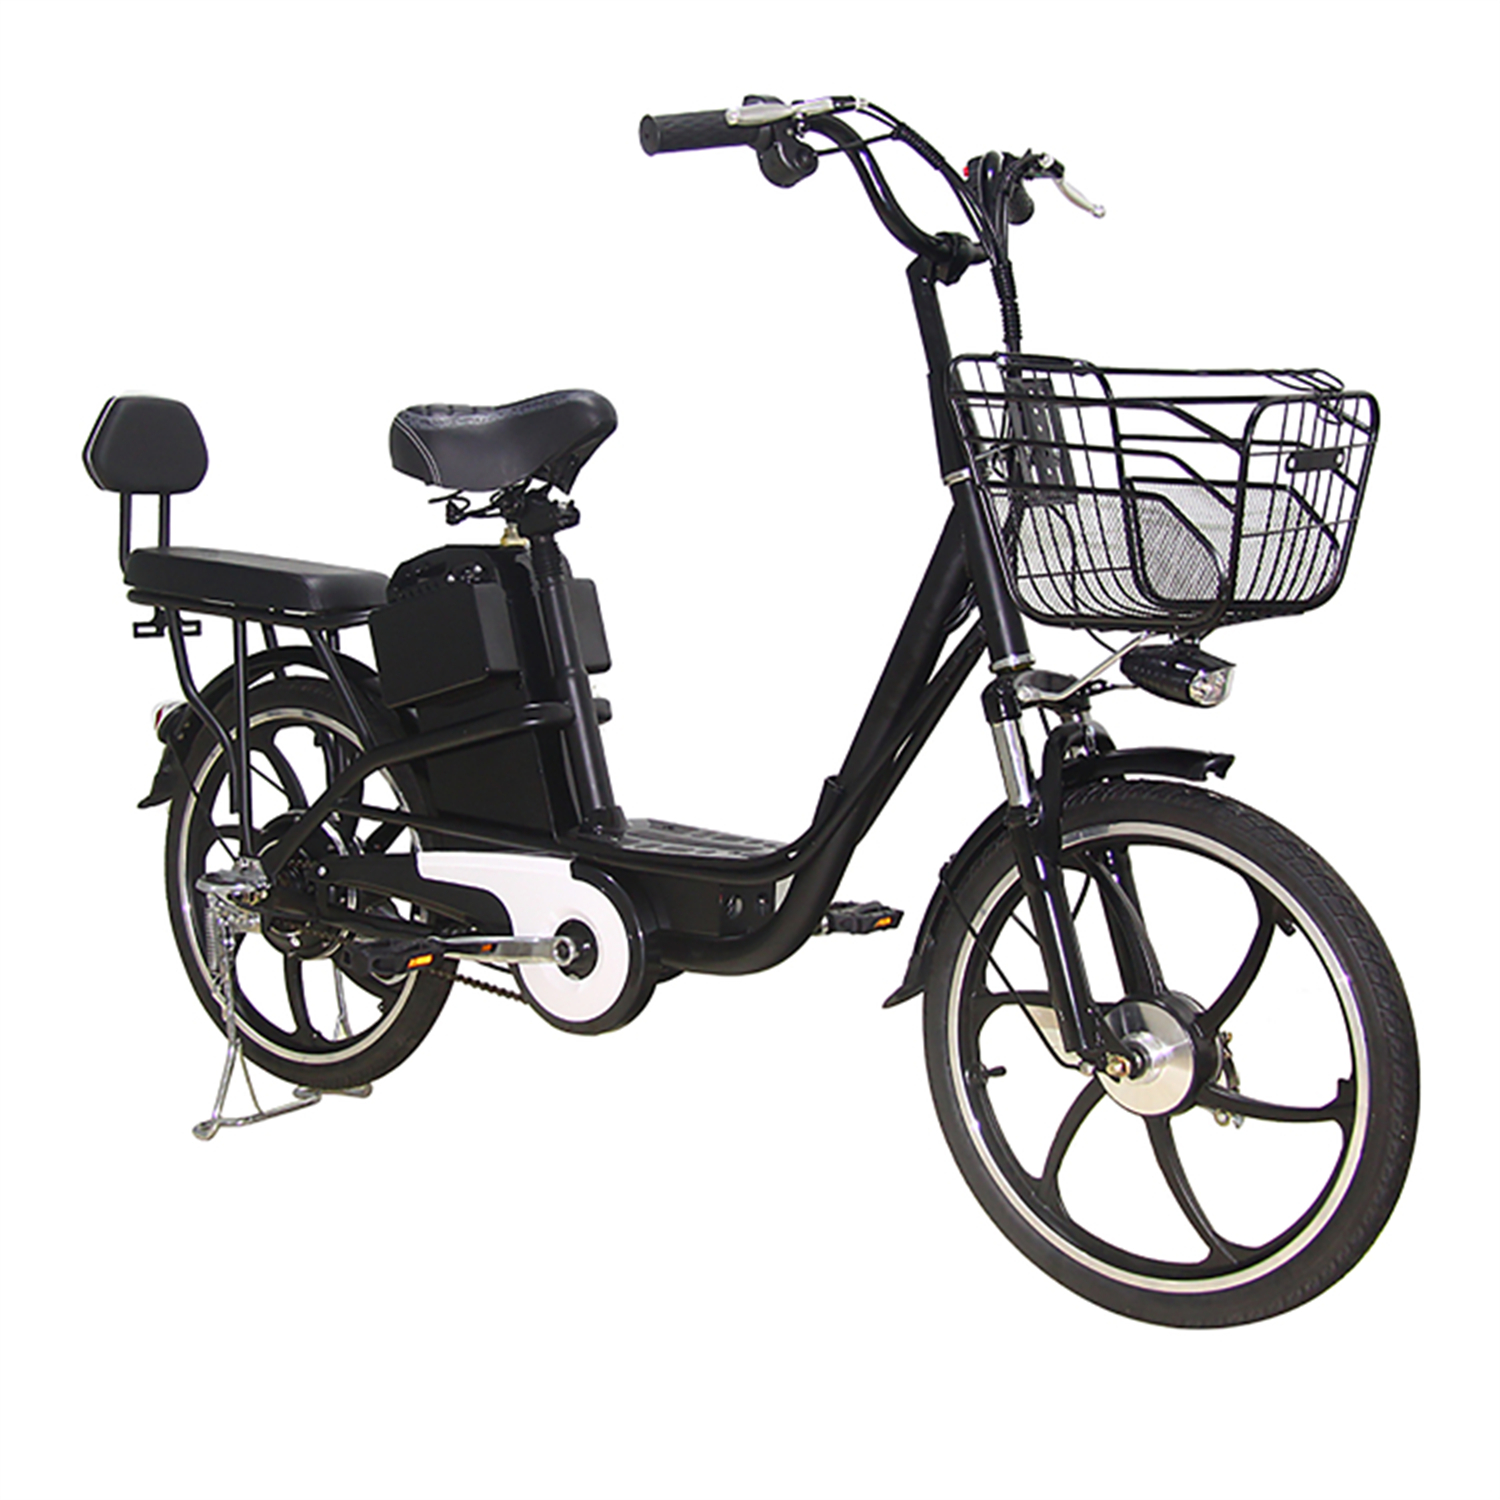 Bicicleta eléctrica de 2 ruedas 48V ELAND para adultos